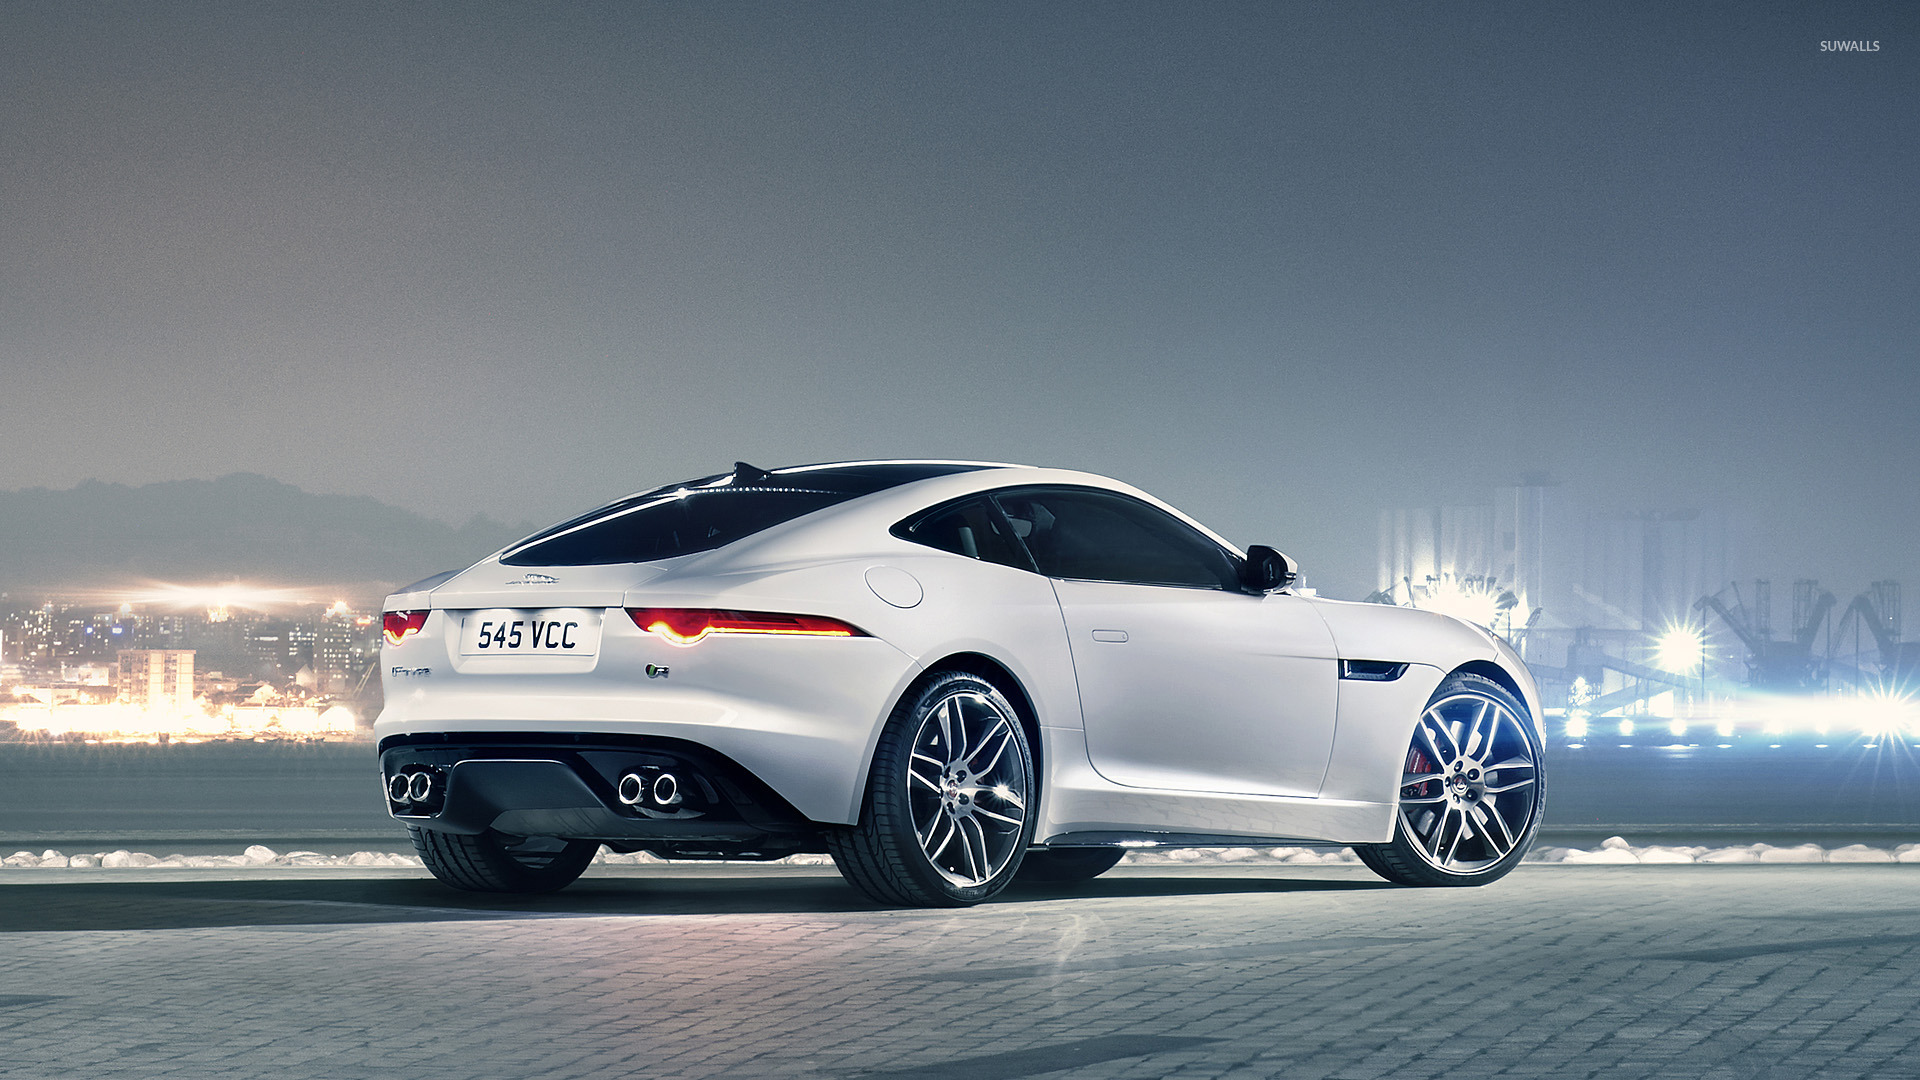 Jaguar Car Wallpaper Hd Free Download